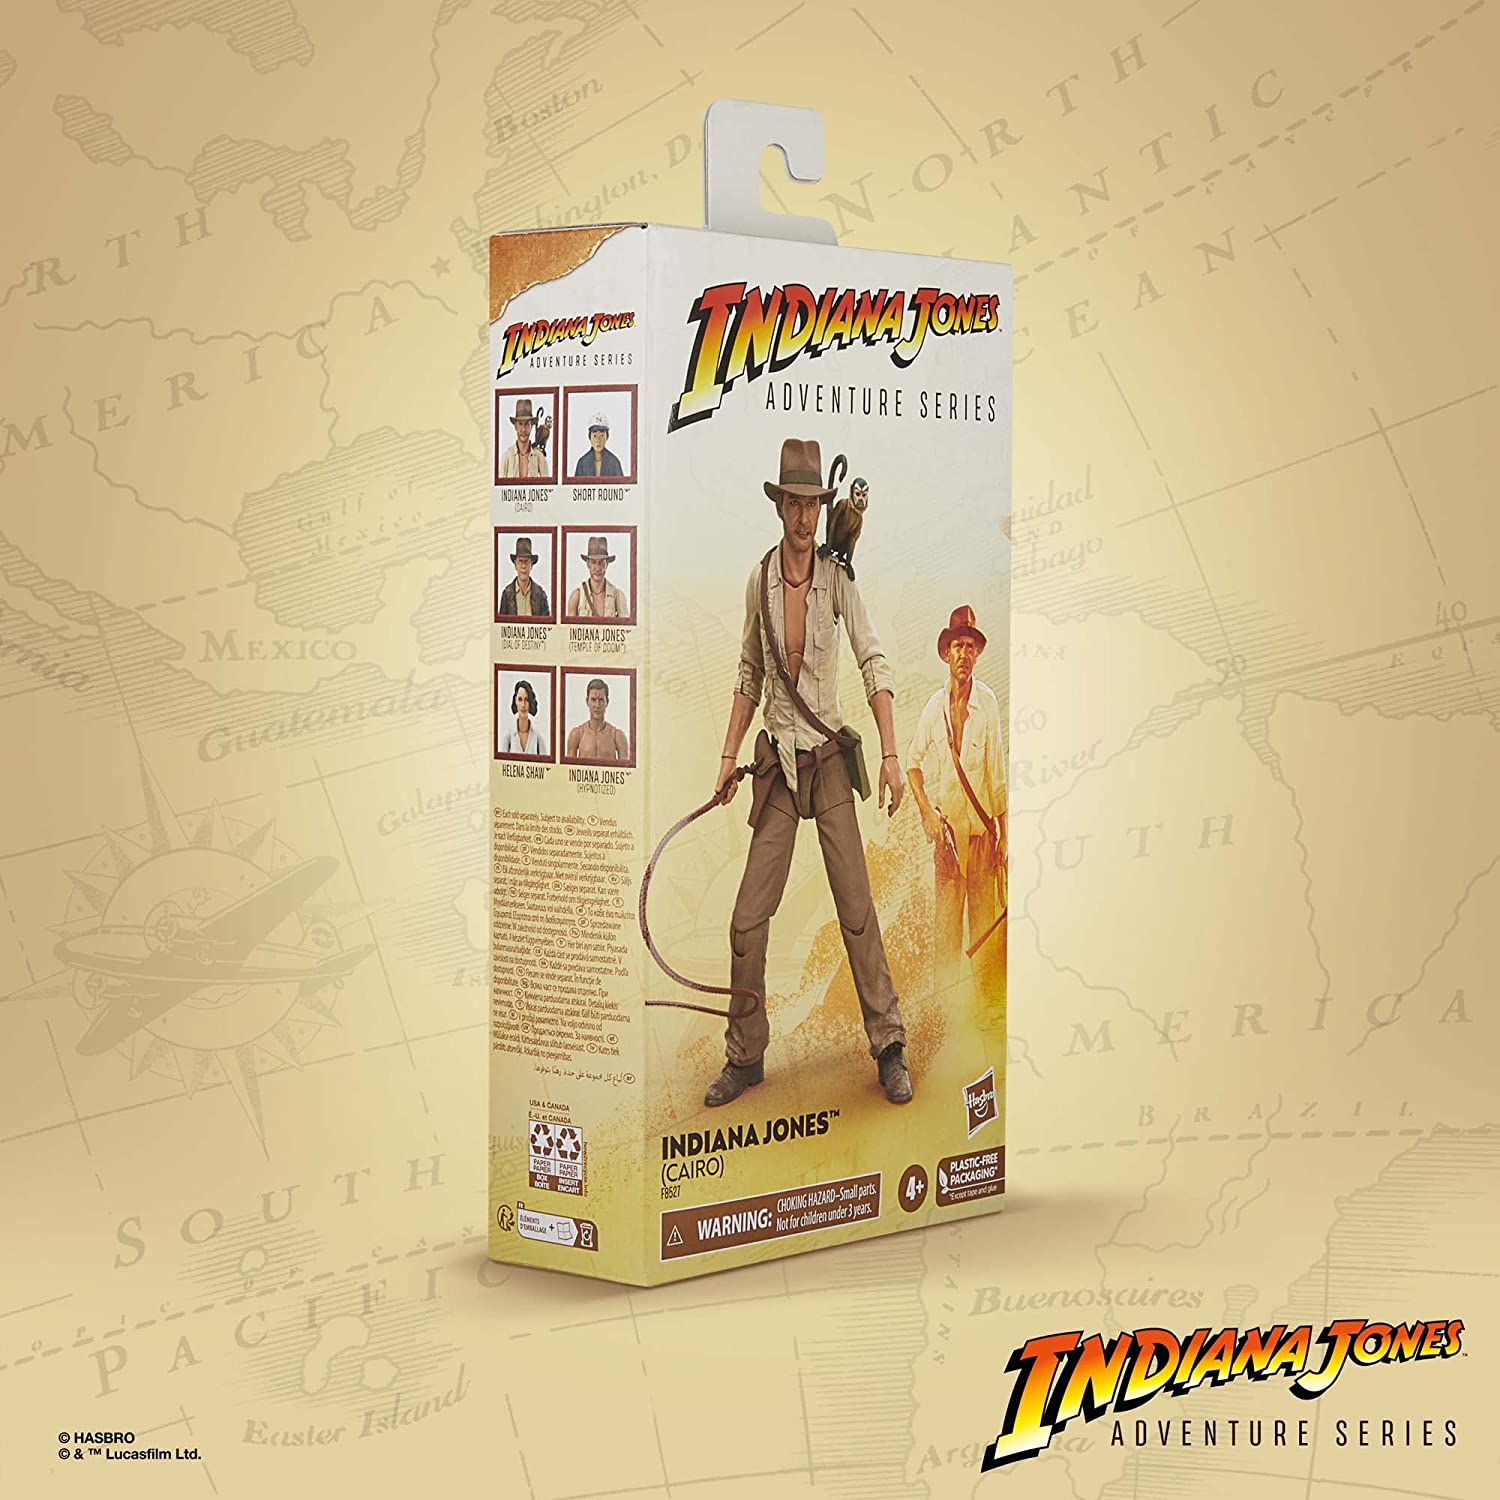 Indiana Jones Adventure Series Indiana Jones(Cairo) 6-Inch Action Figure画像